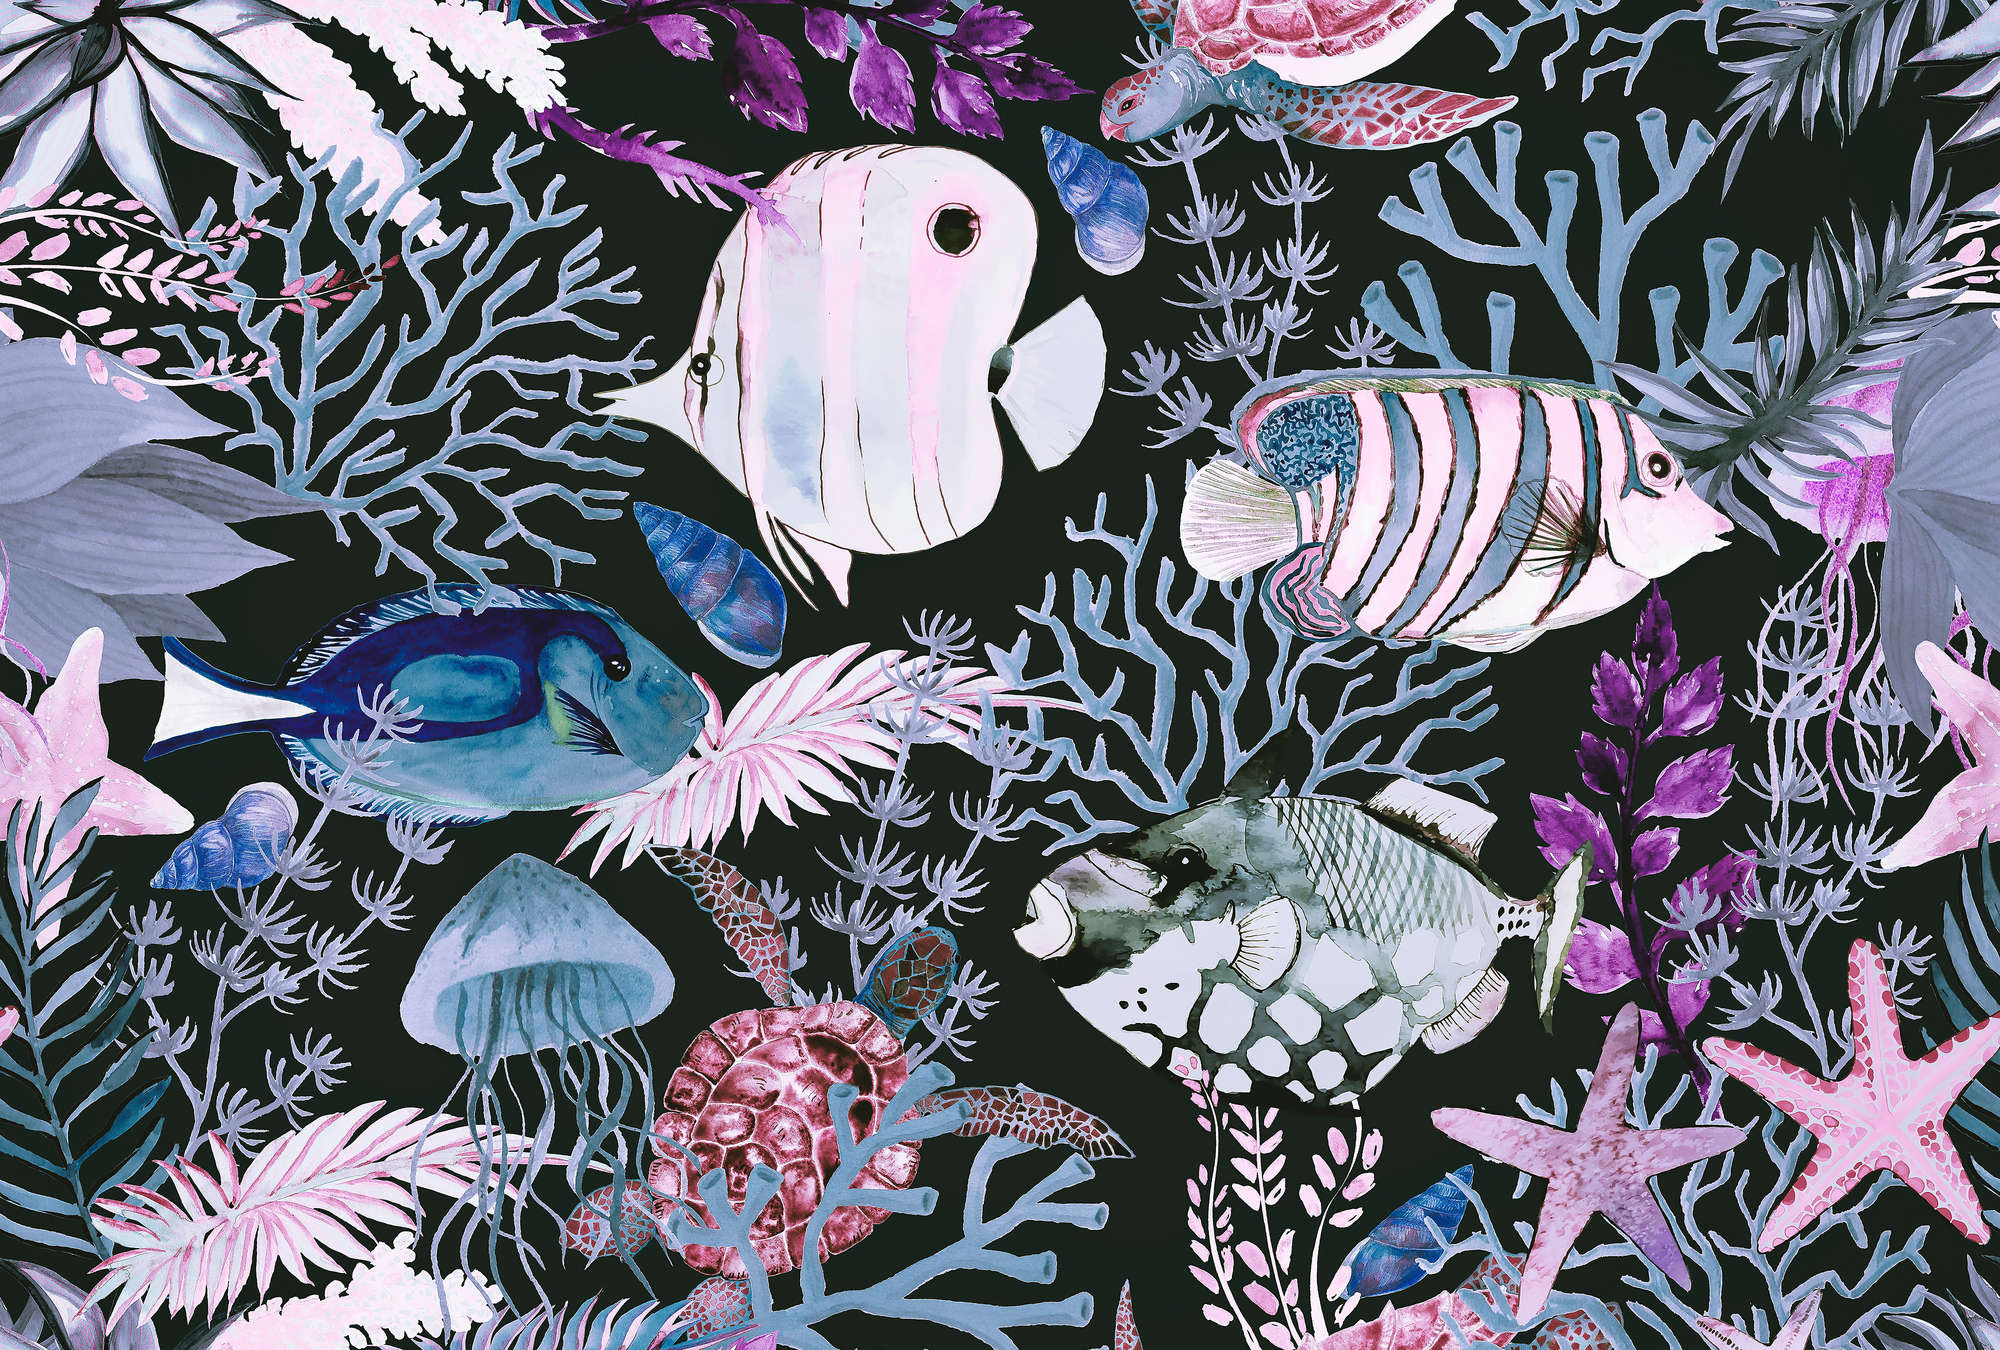             Carta da parati subacquea con pesci e coralli in stile acquerello
        